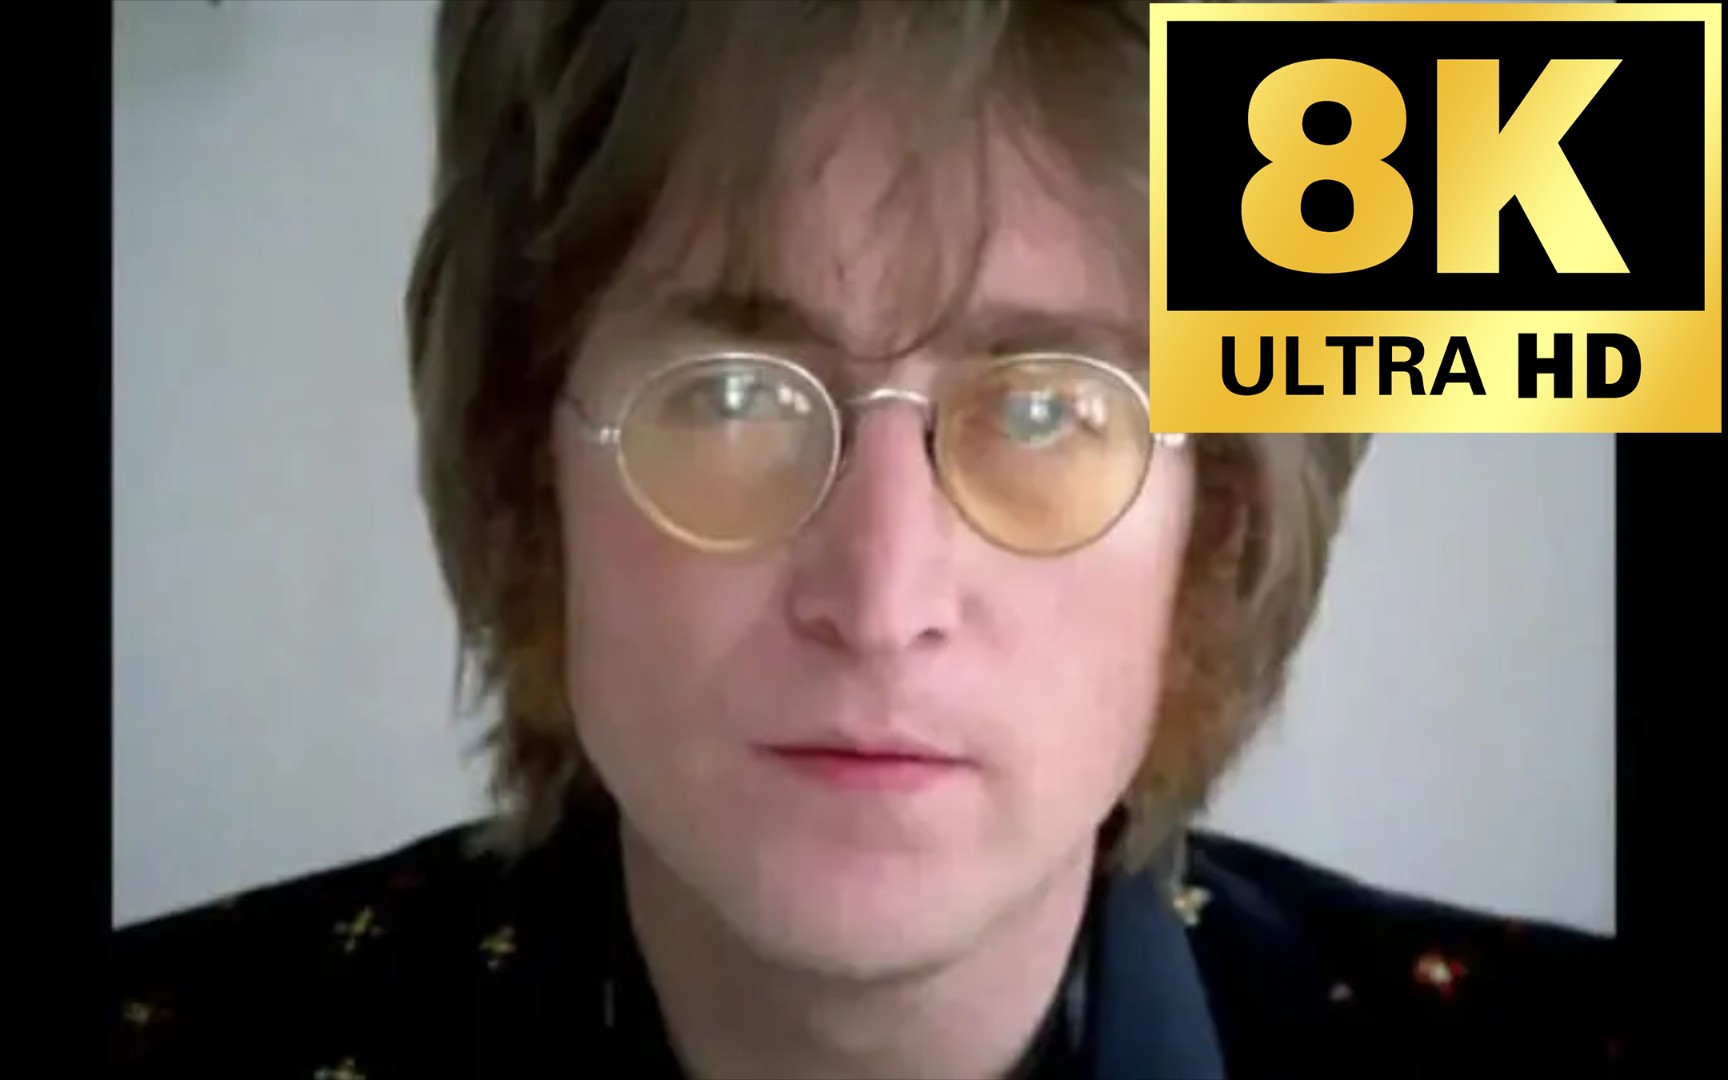 【𝟖𝗞𝟭𝟮𝟬𝗙𝗣𝗦丨独家修复】𝟮𝟬𝟮𝟰年最新重制版 全网最清晰 约翰列侬 John Lennon《Imagine》1971 MV